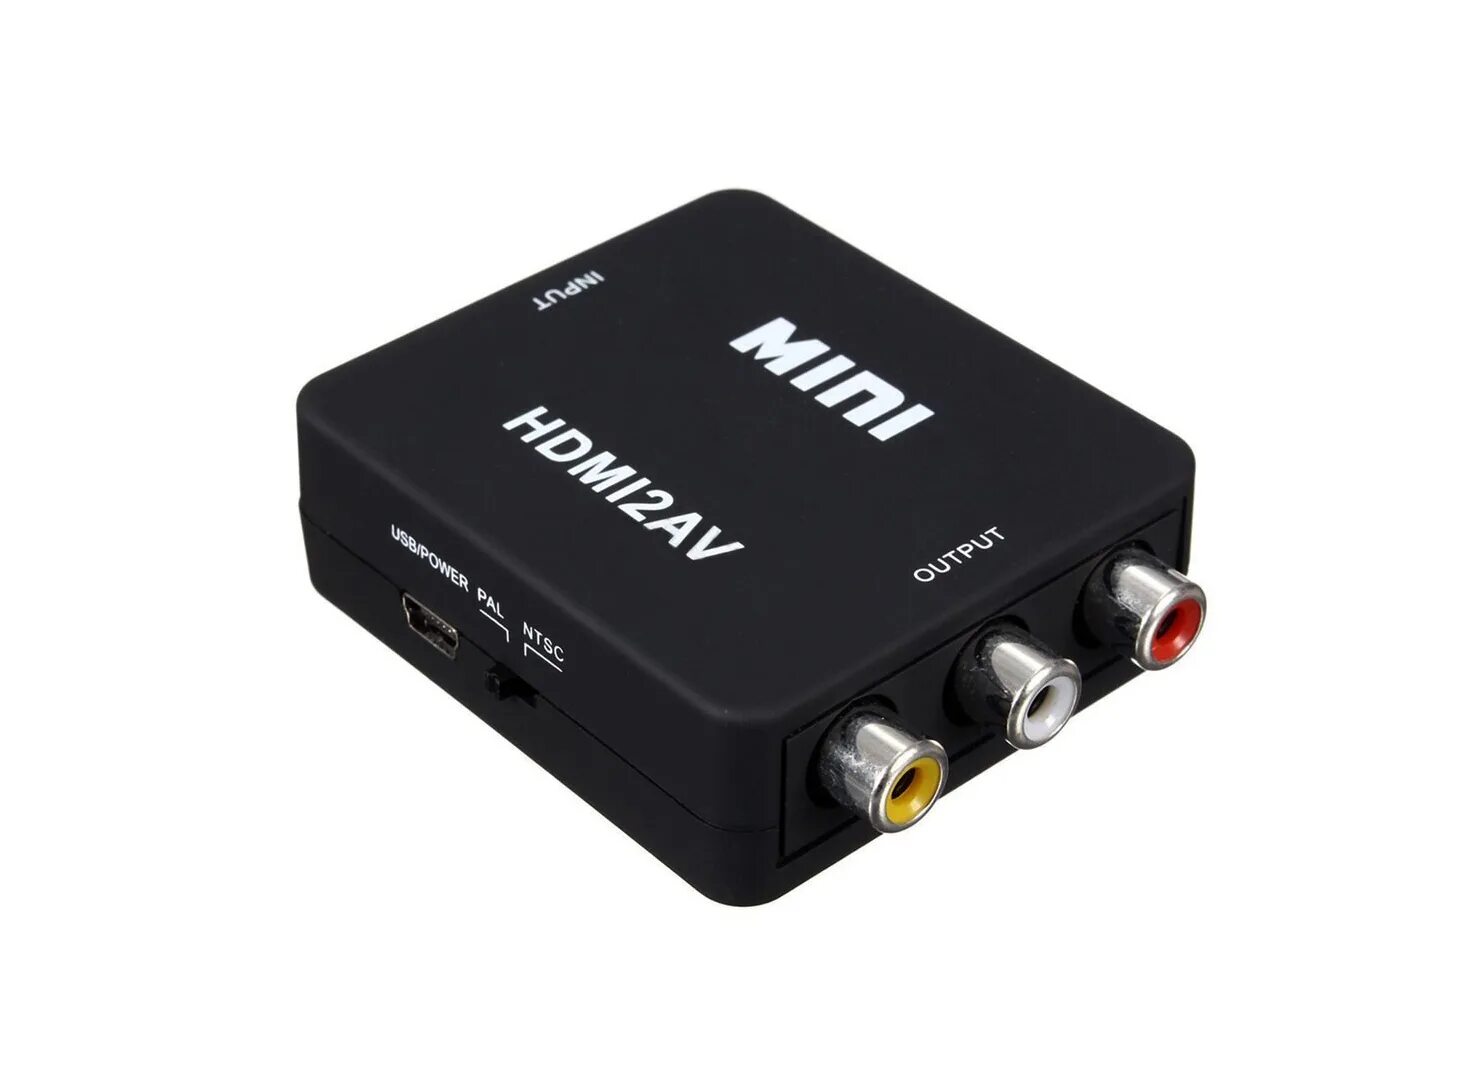 Av 02. Адаптер Mini av/HDMI 1080p Converter to 3 RCA (Black). HDMI to RCA av Converter hdmi2av. Адаптер переходник RCA (тюльпан) HDMI. Переходник HDMI to av (RCA).